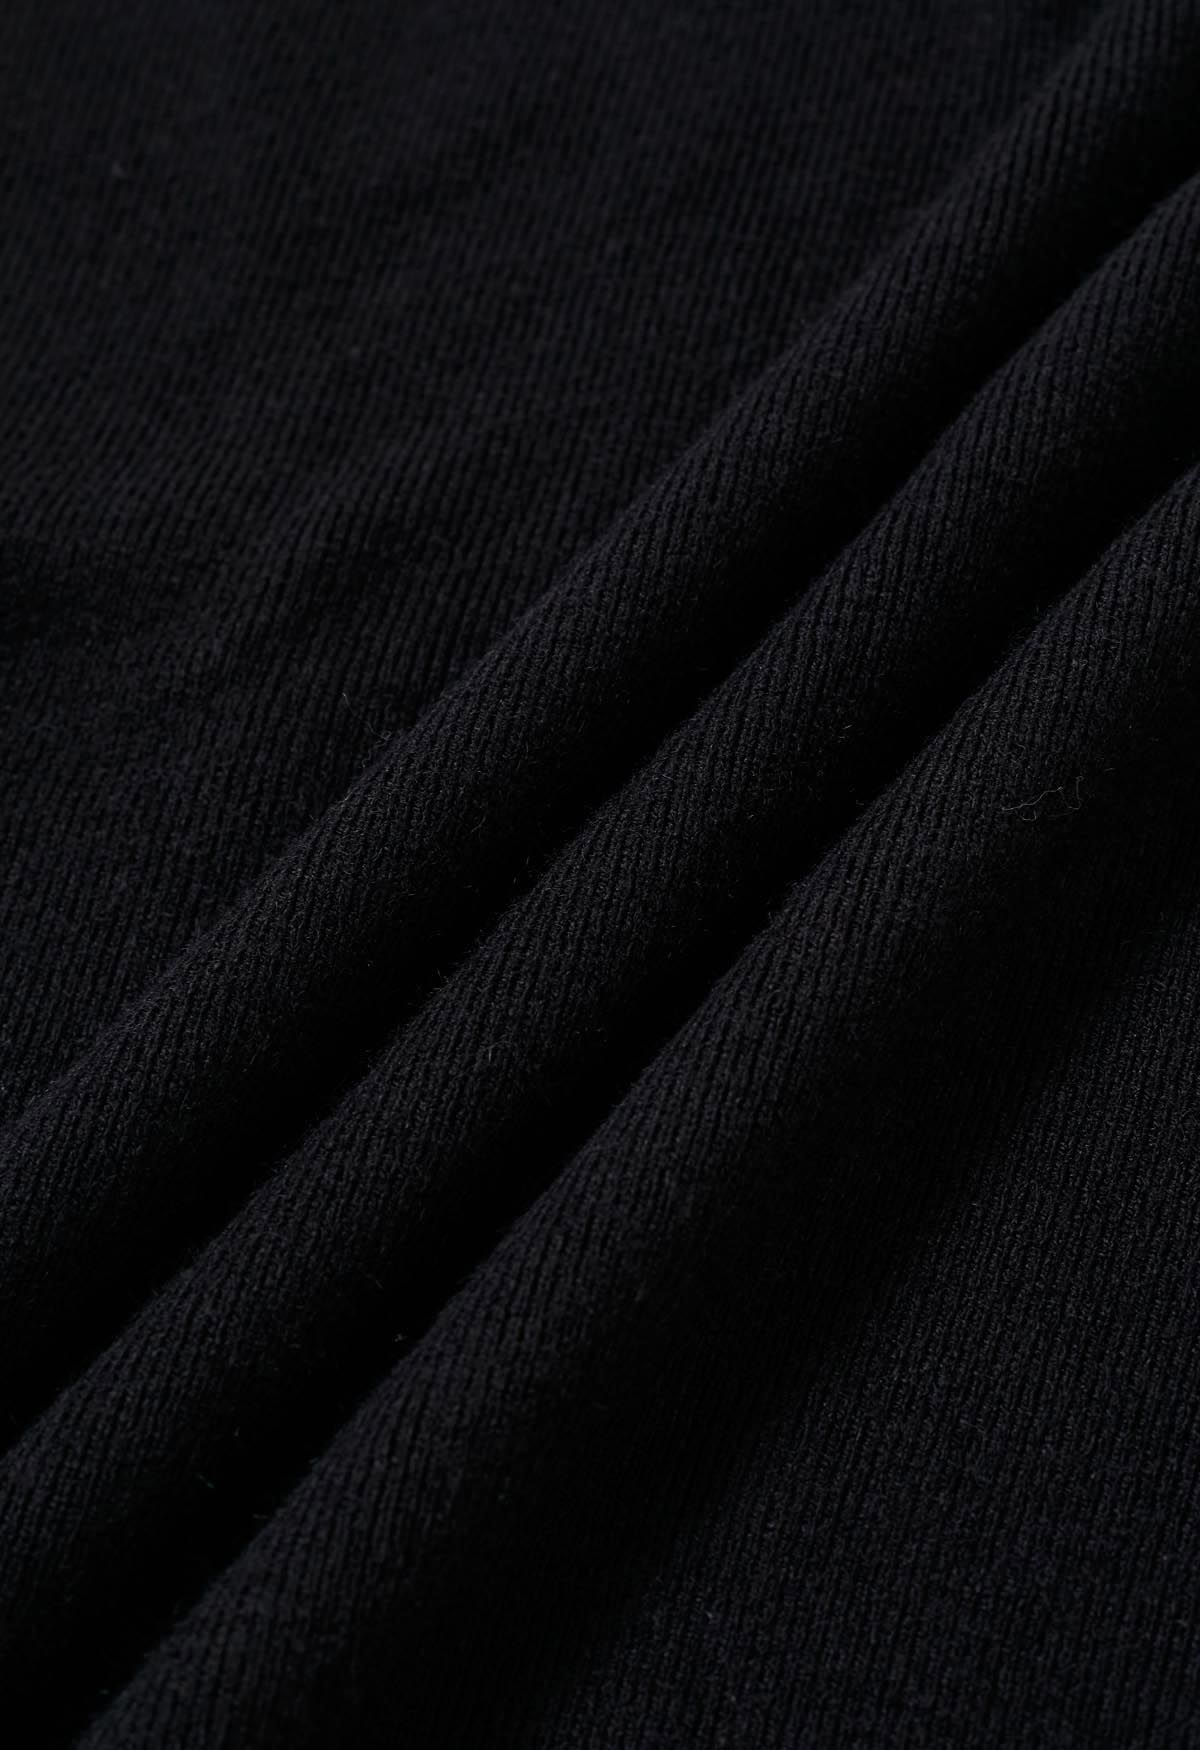 طقم فستان كاجوال من الصوف المخلوط بدون أكمام وسترة بأكمام باللون الأسود